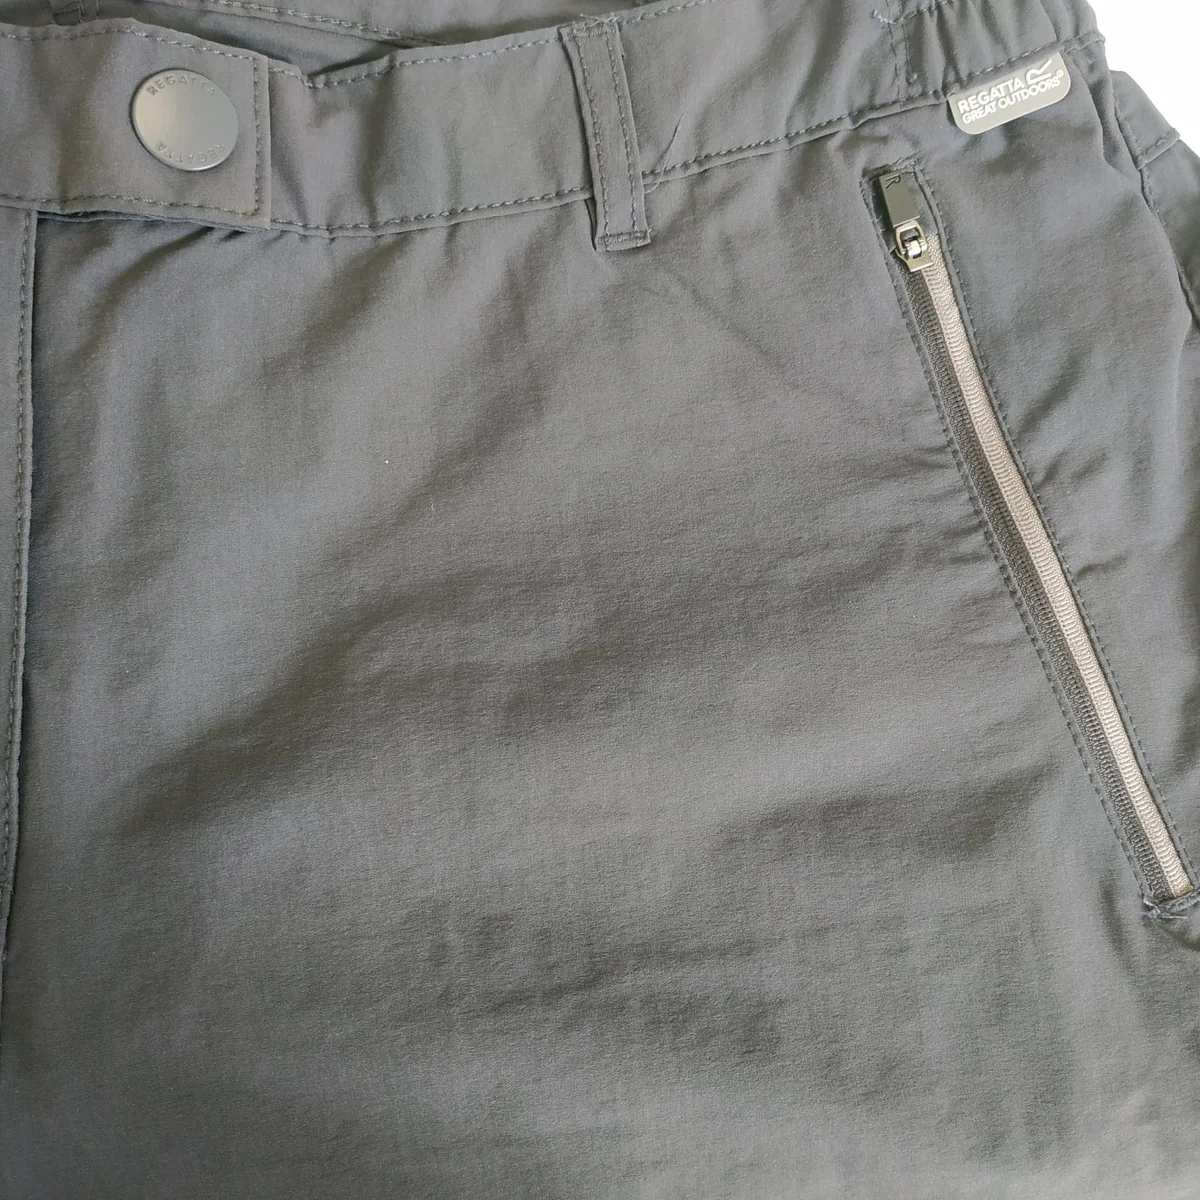 Dámské tmavě šedé outdoorové kalhoty REGATTA